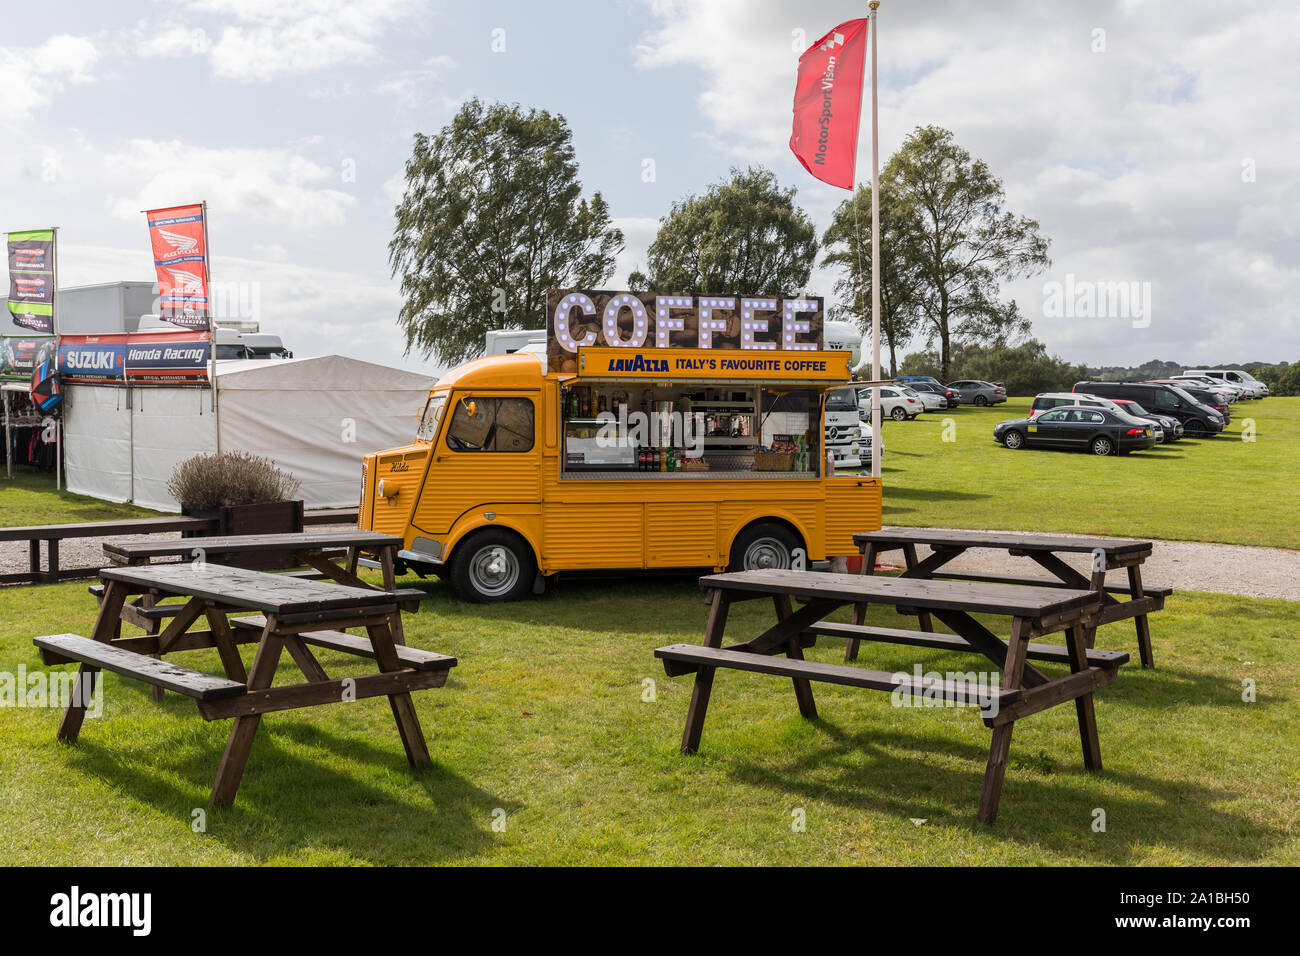 Café catering móvil van en Oulton Park, REINO UNIDO Foto de stock